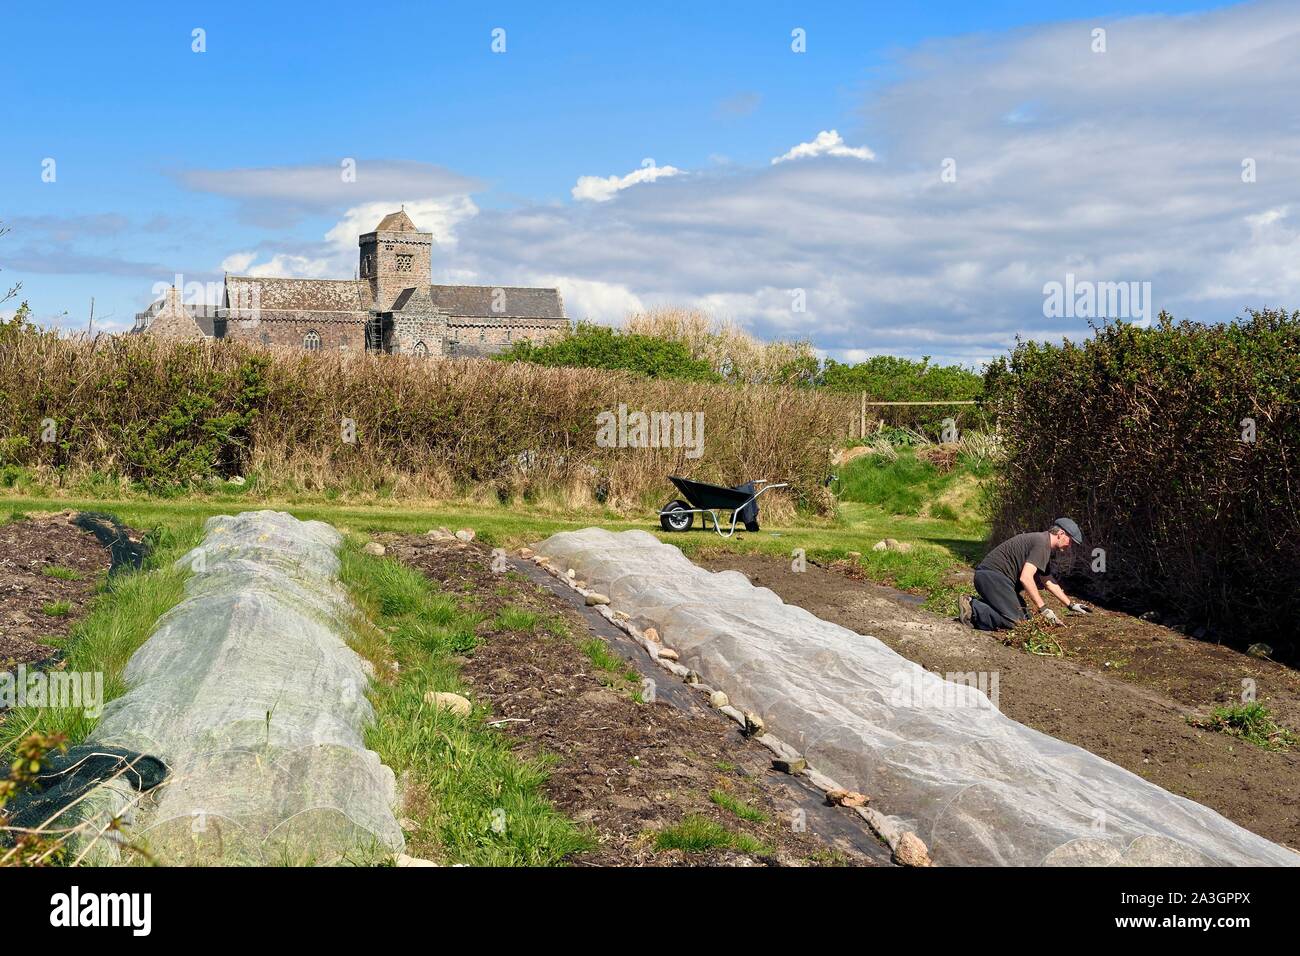 Reino Unido, Escocia, Highland, Inner Hebrides, isla de Iona frente a la isla de Mull, Iona abadía fundada por san Columba en el siglo VI y el Argyll Hotel huerta orgánica en primer plano Foto de stock